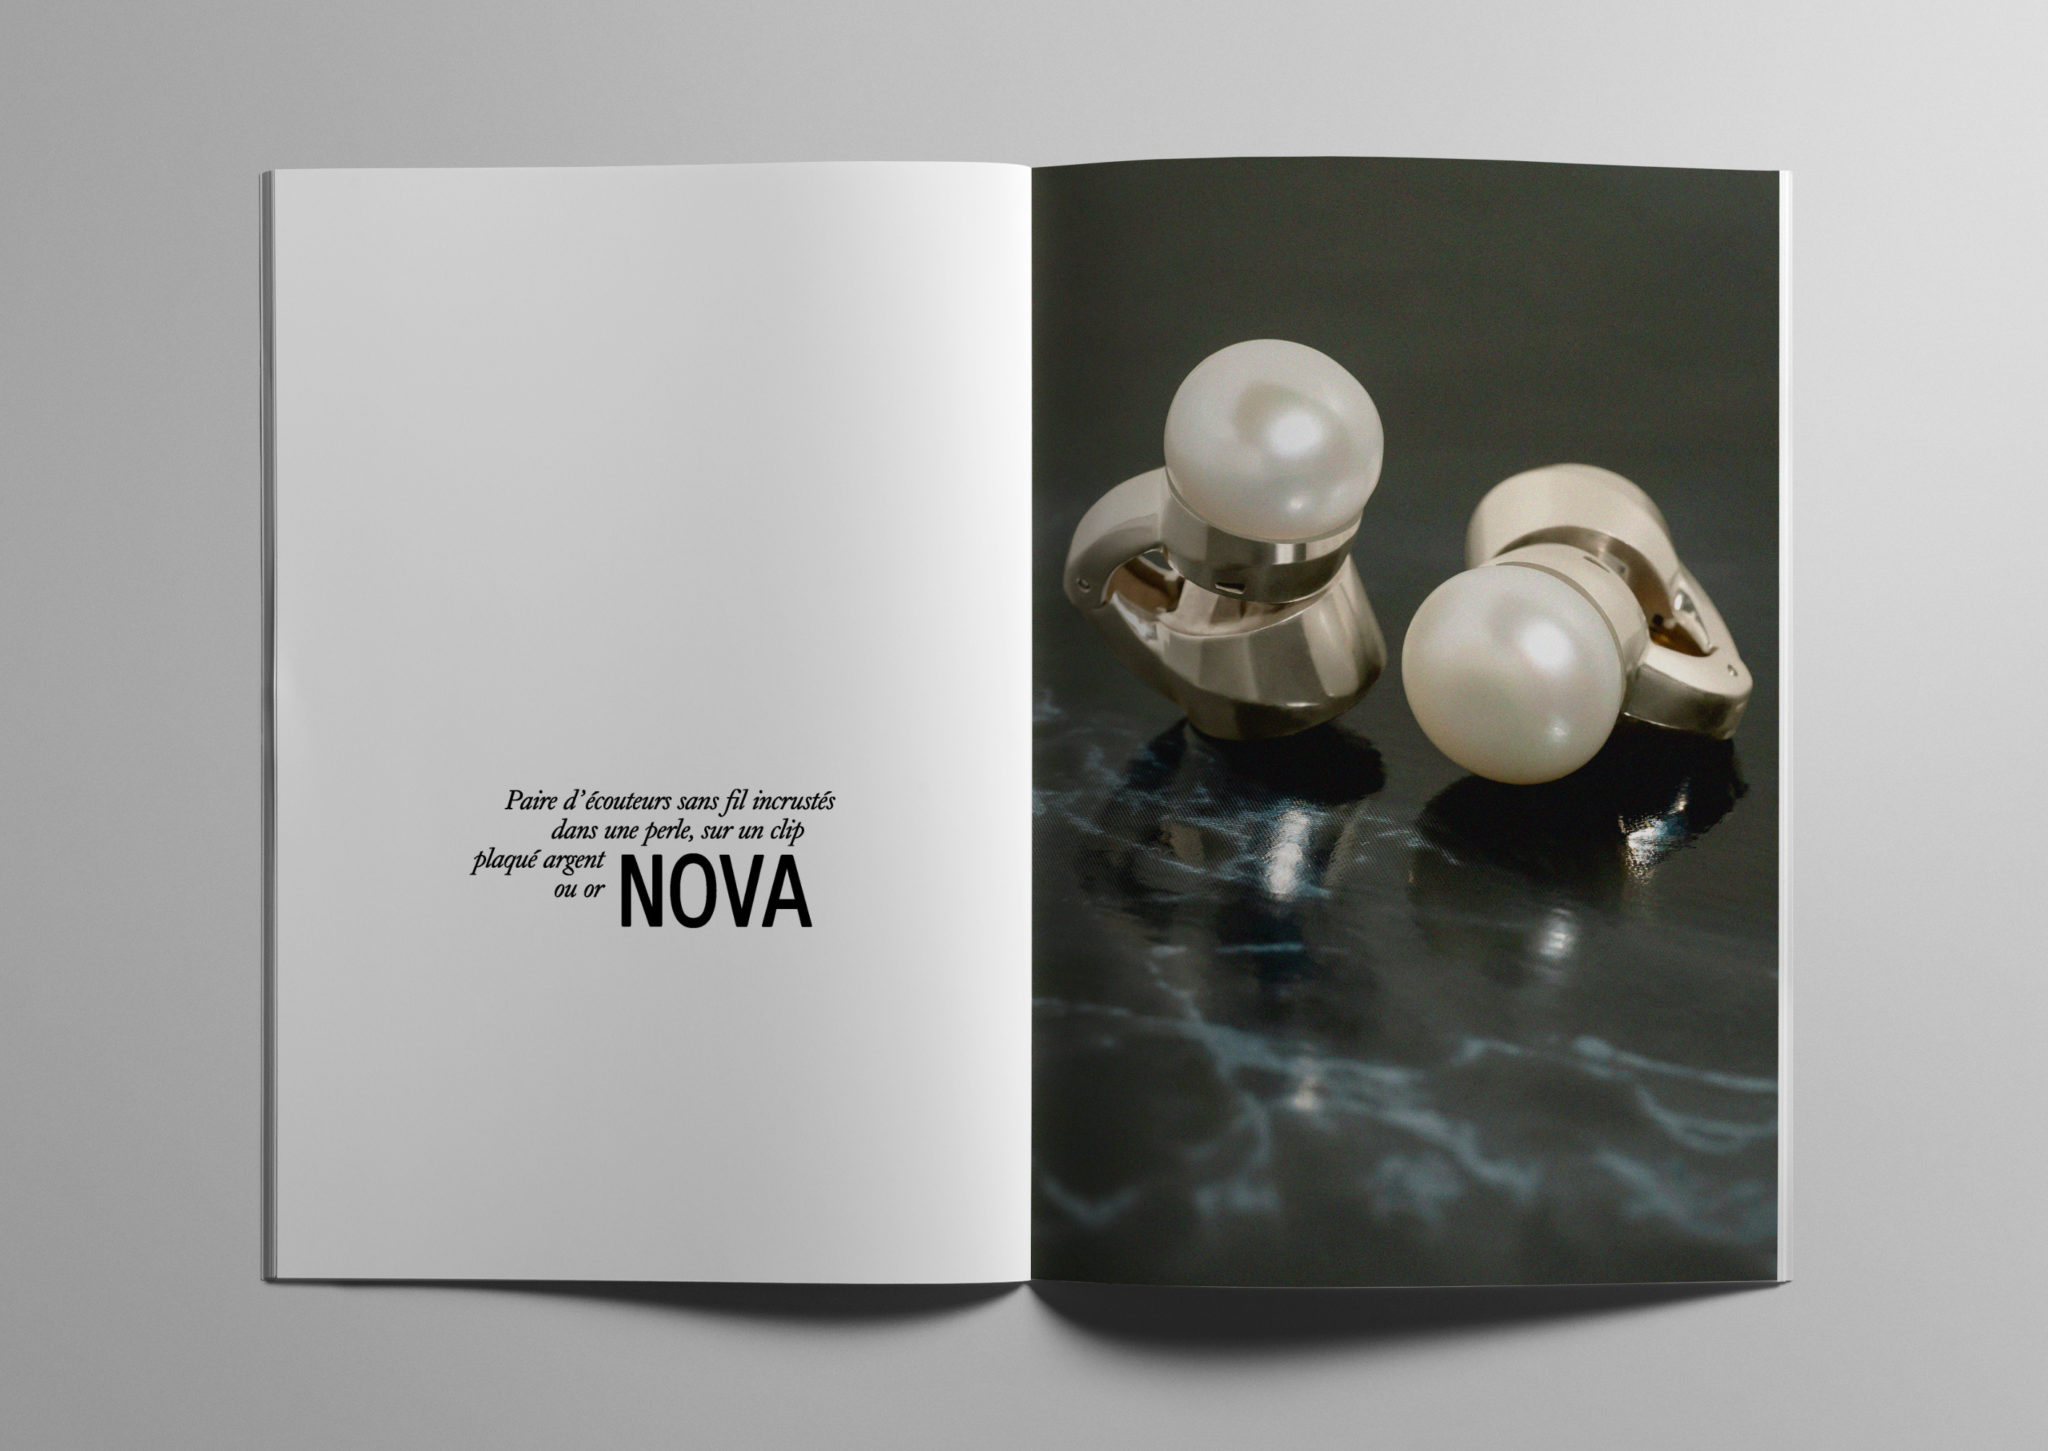 Paire d’écouteurs sans fil incrustés dans une perle, sur un clip plaqué argent ou or, NOVA